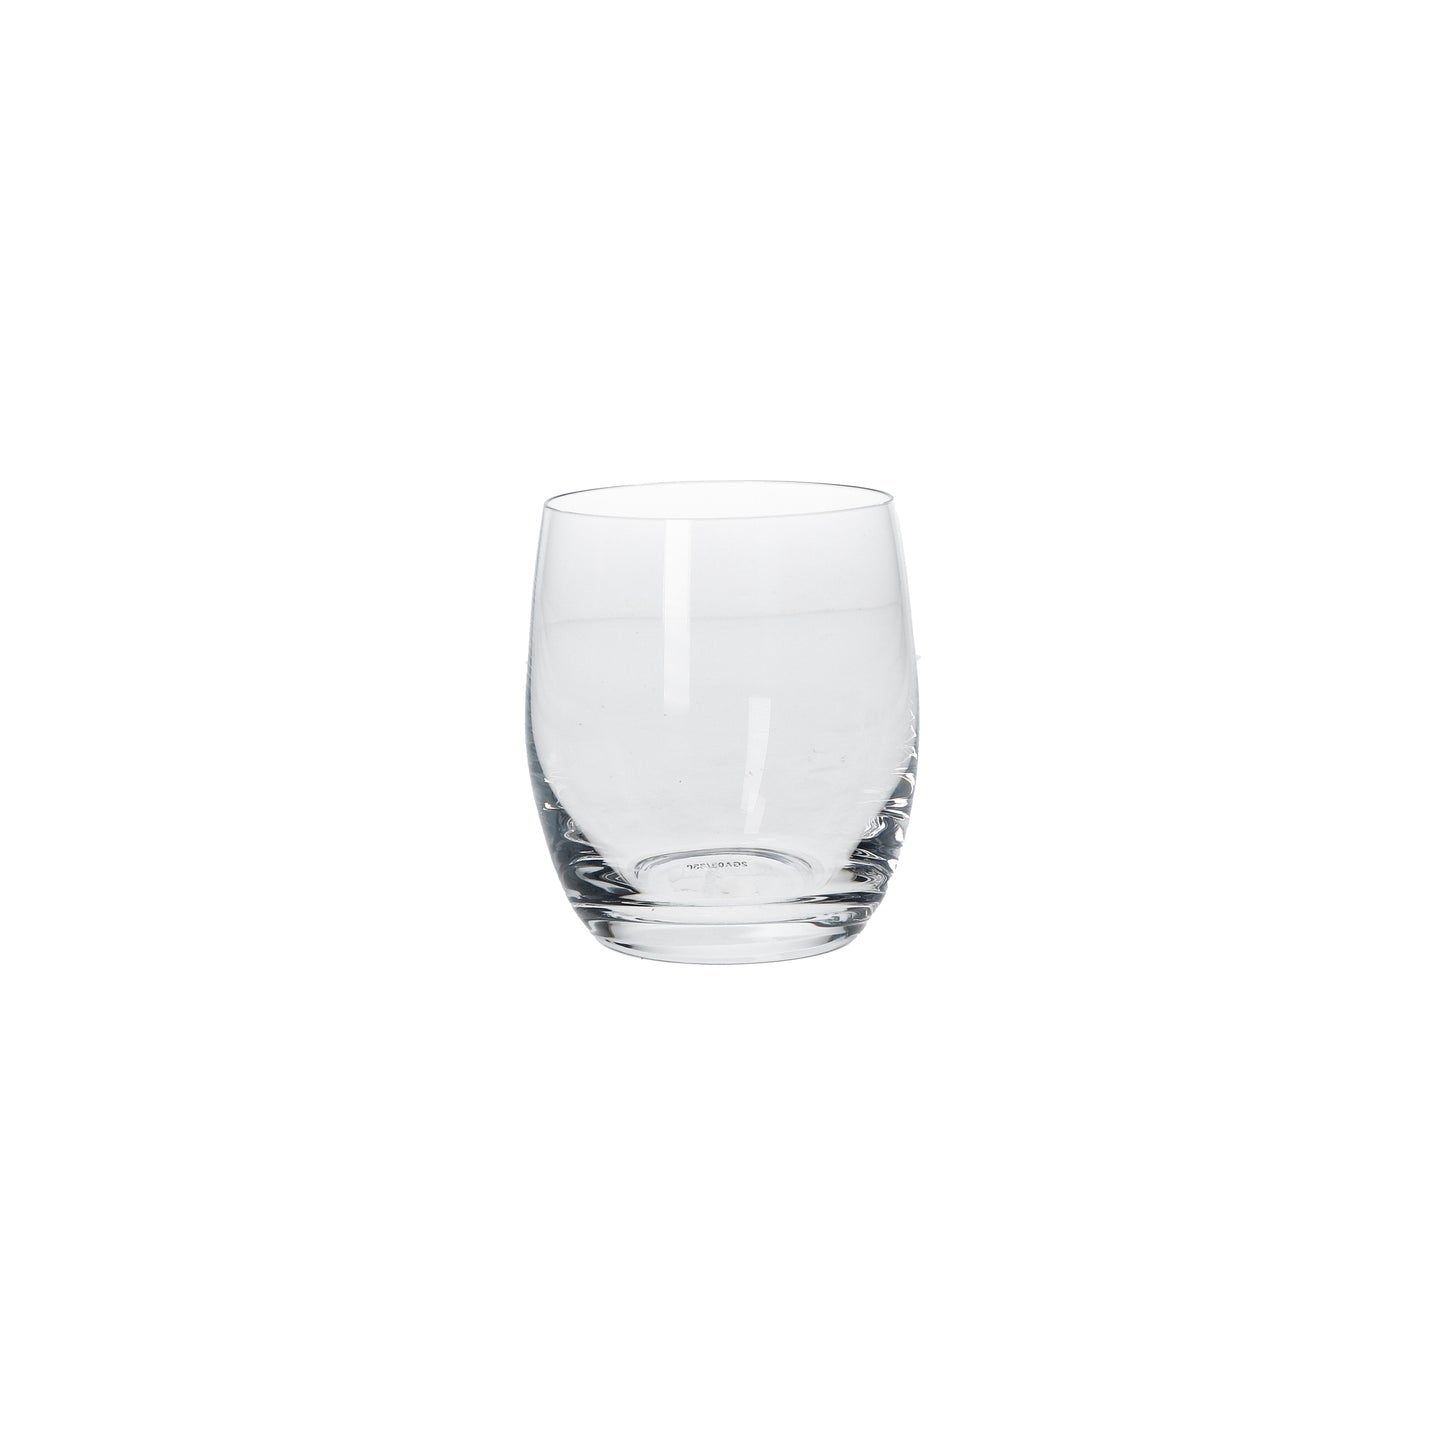 Set 6 bicchieri in vetro trasparente 330 ml lavabile in lavastoviglie, h 9. La linea "Novello", elegante e delicata, trasforma ogni pranzo e cena in un evento speciale. In negozio e online su tutttochic.it